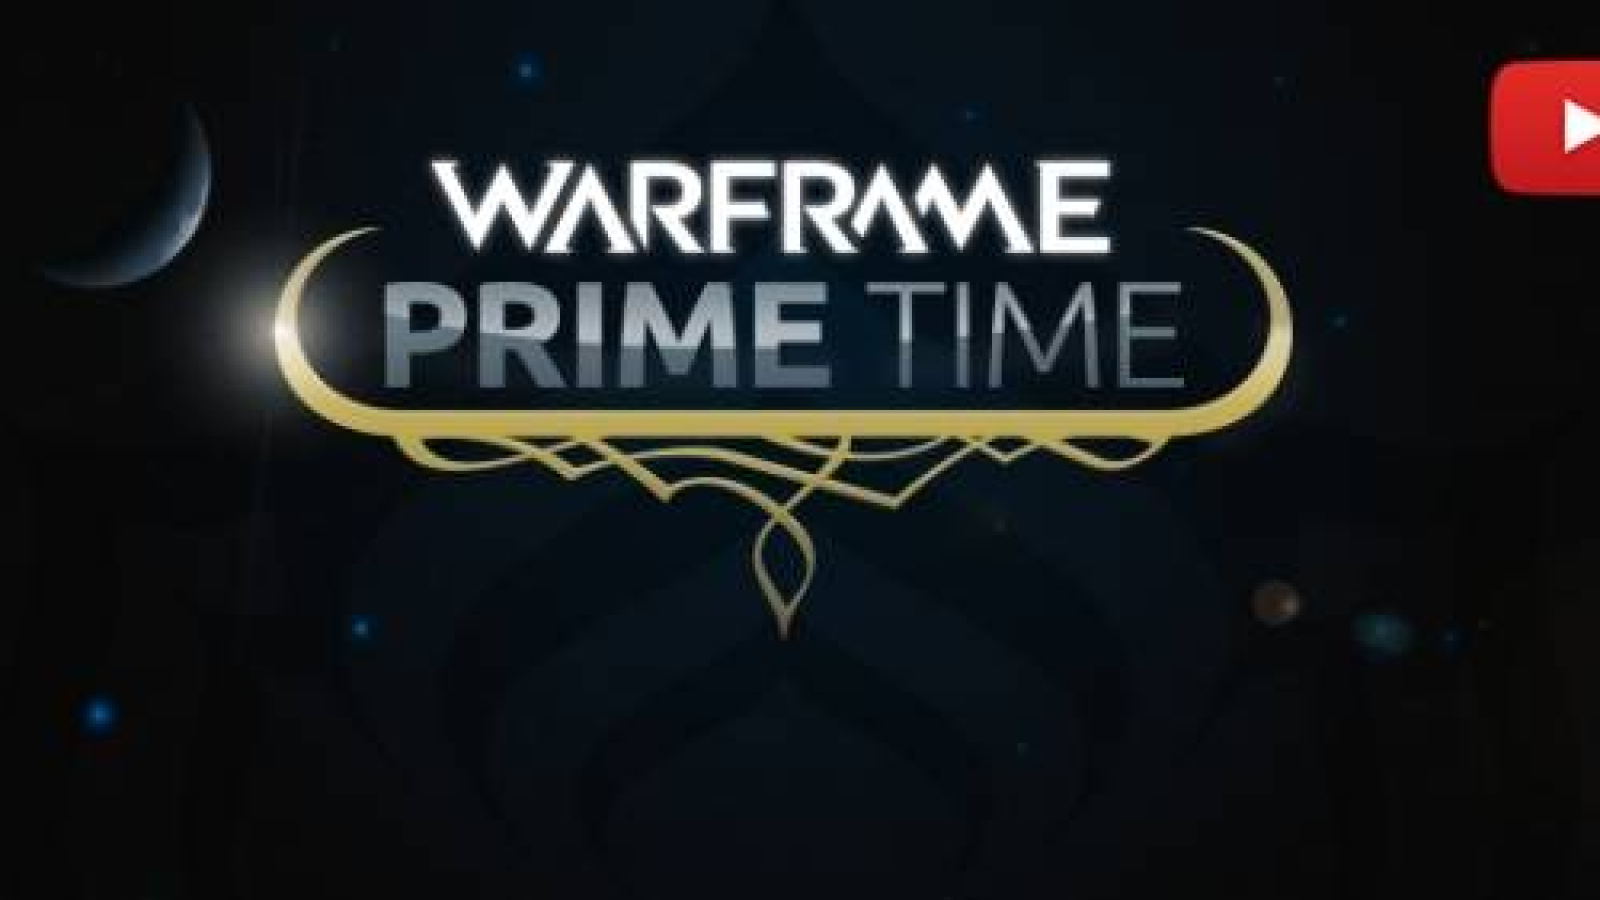 WARFRAME PRIME TIME